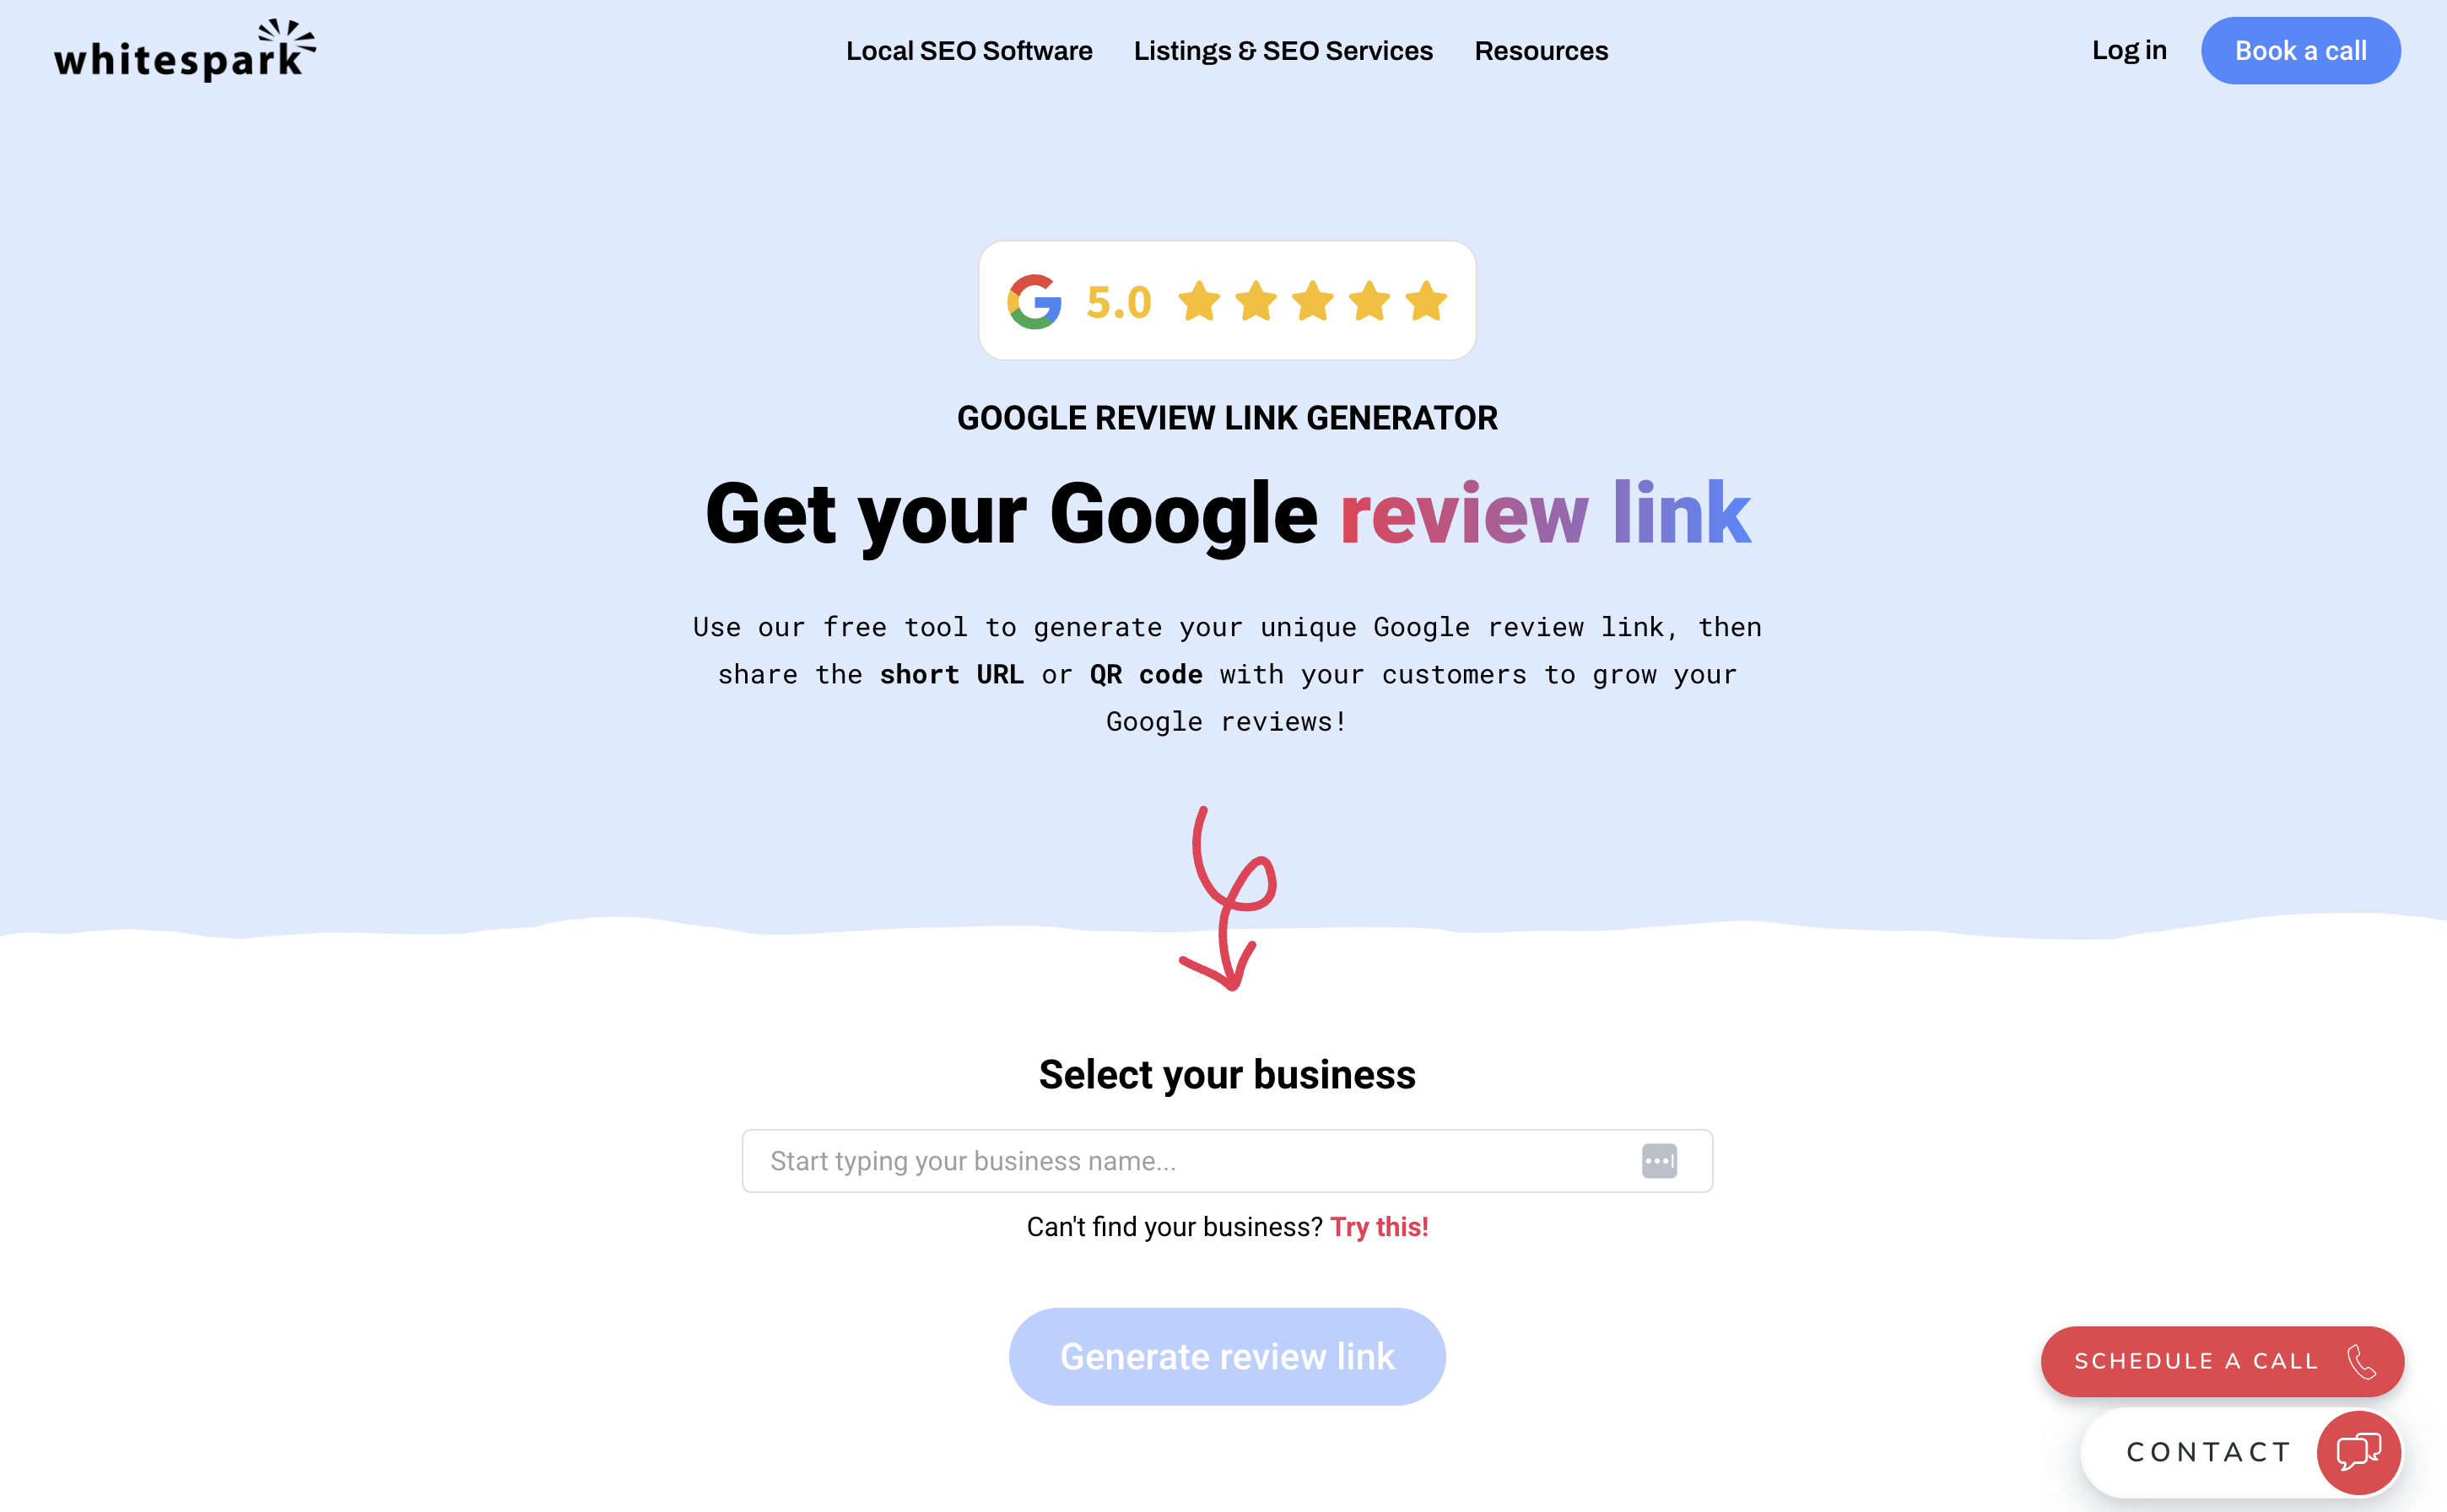 Whitesparks-Google-Review-Link-Generator-website